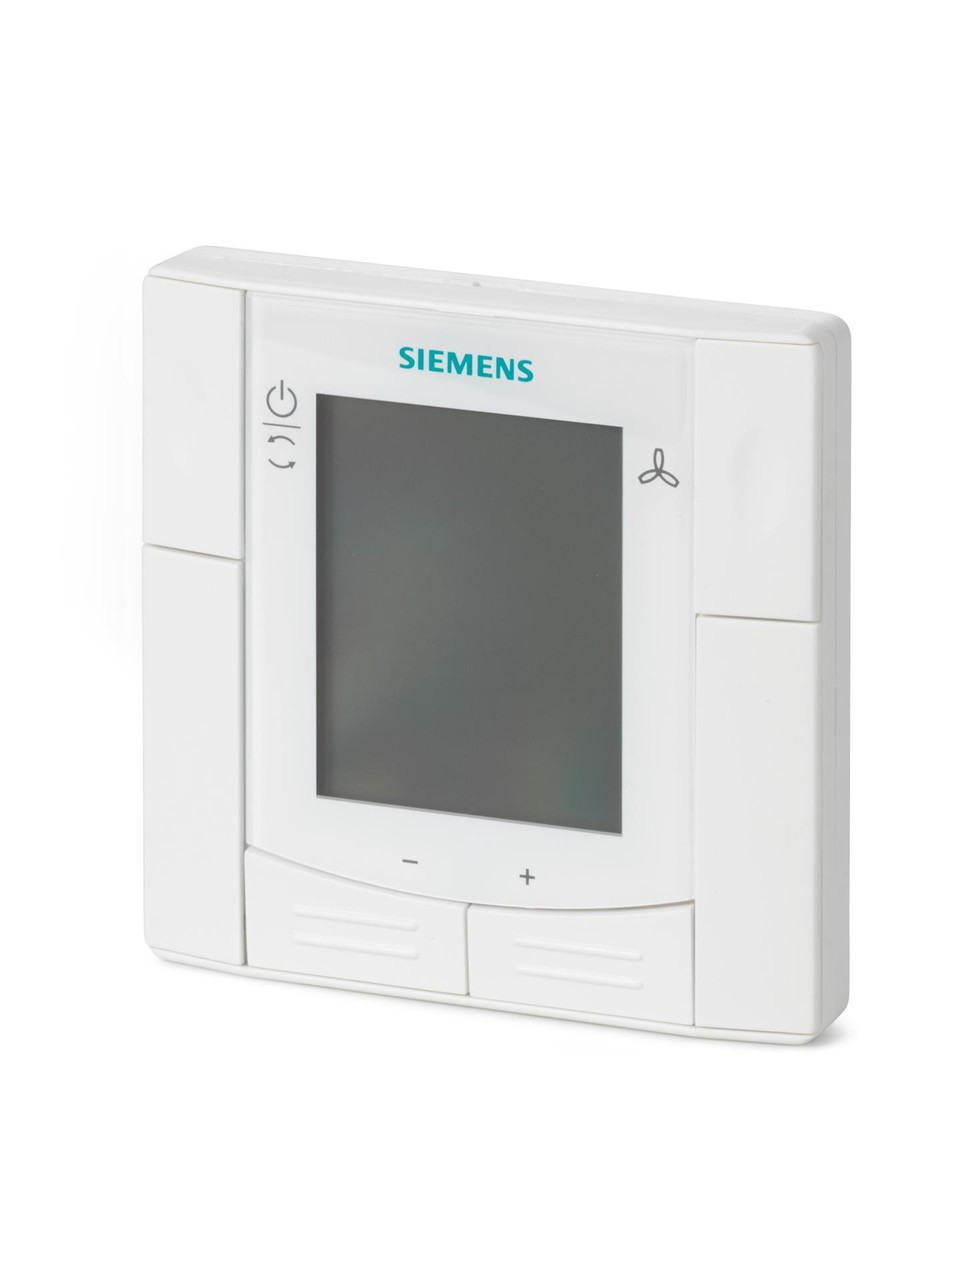 Siemens RDF302.B, S55770-T416